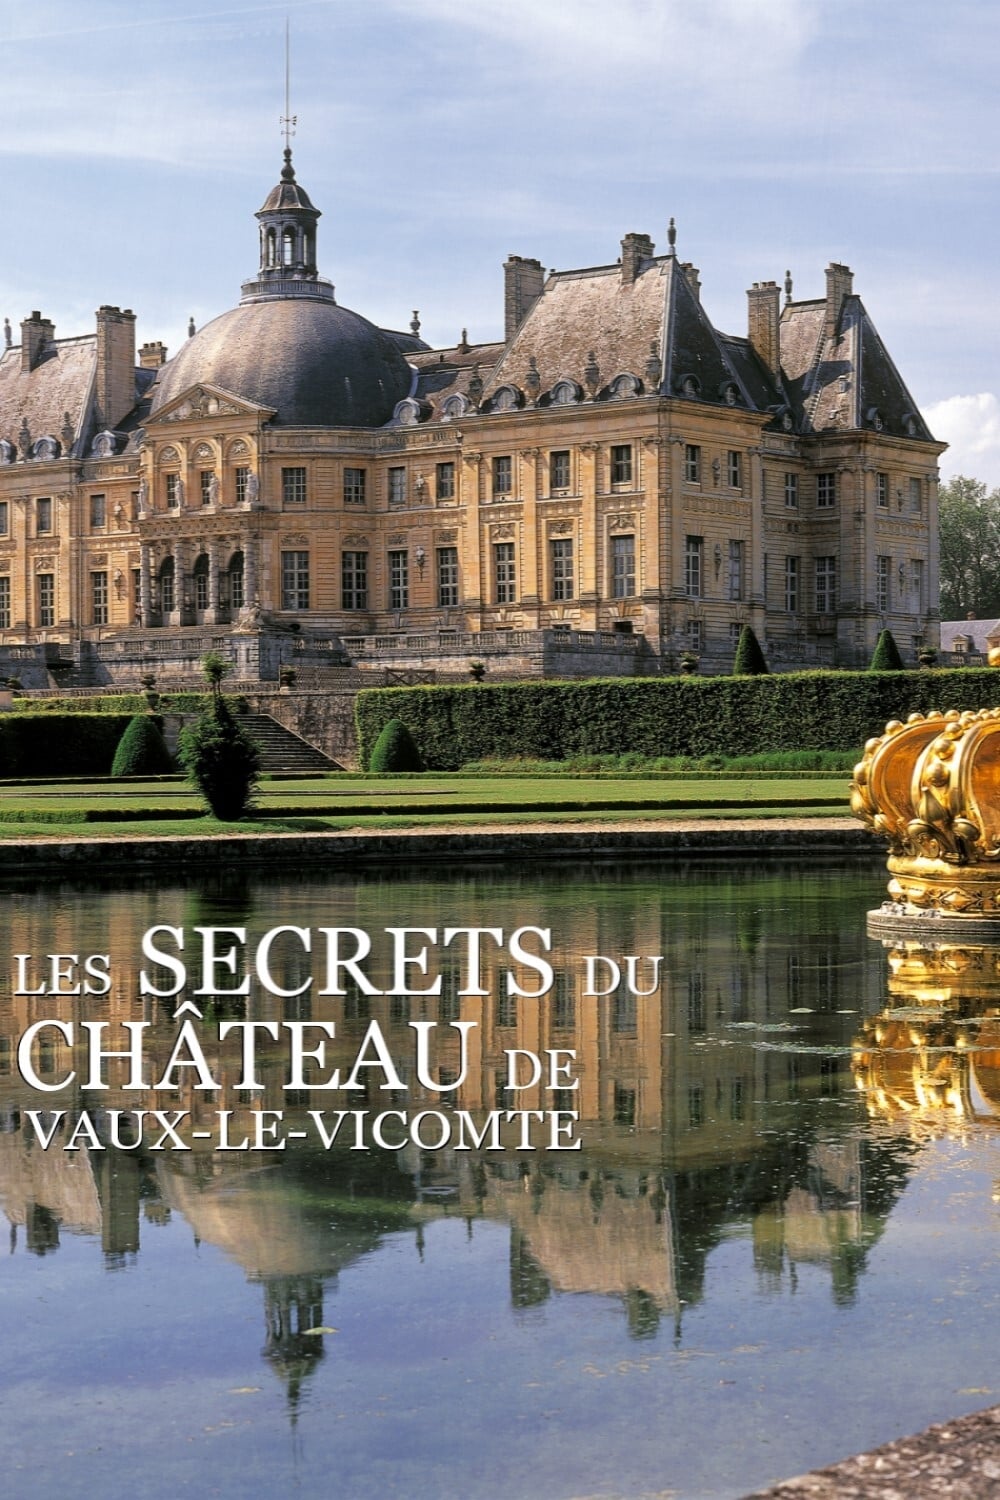 The secrets of the castle of Vaux-le-Vicomte